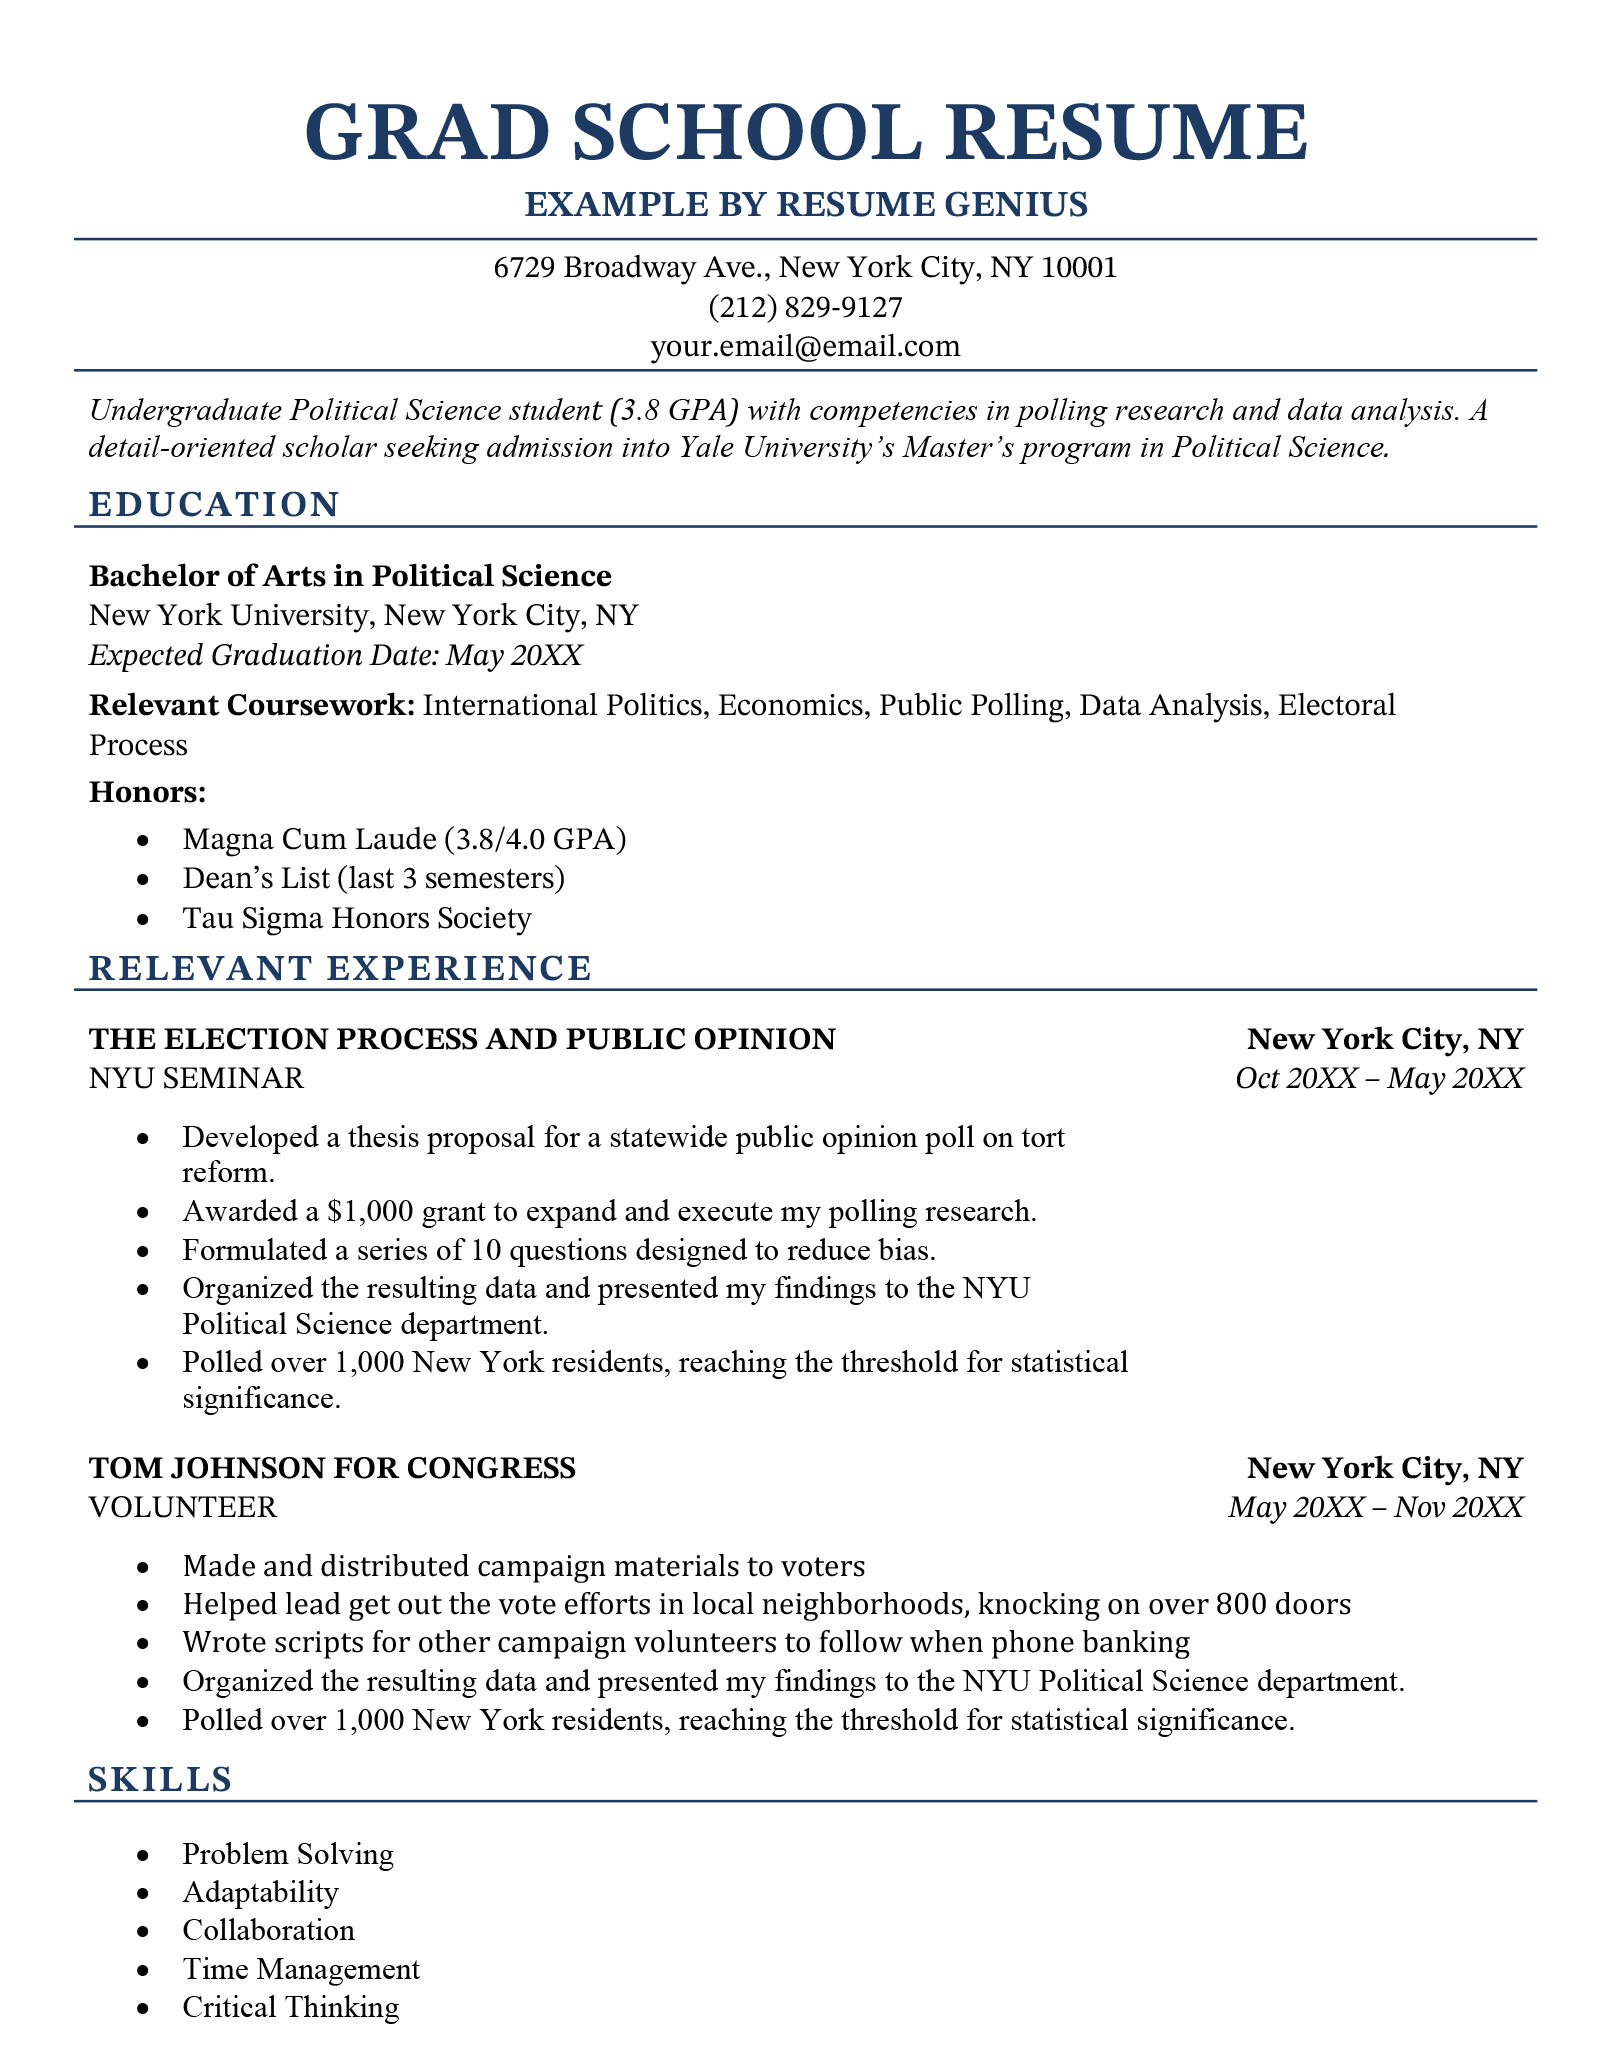 A grad school resume example.